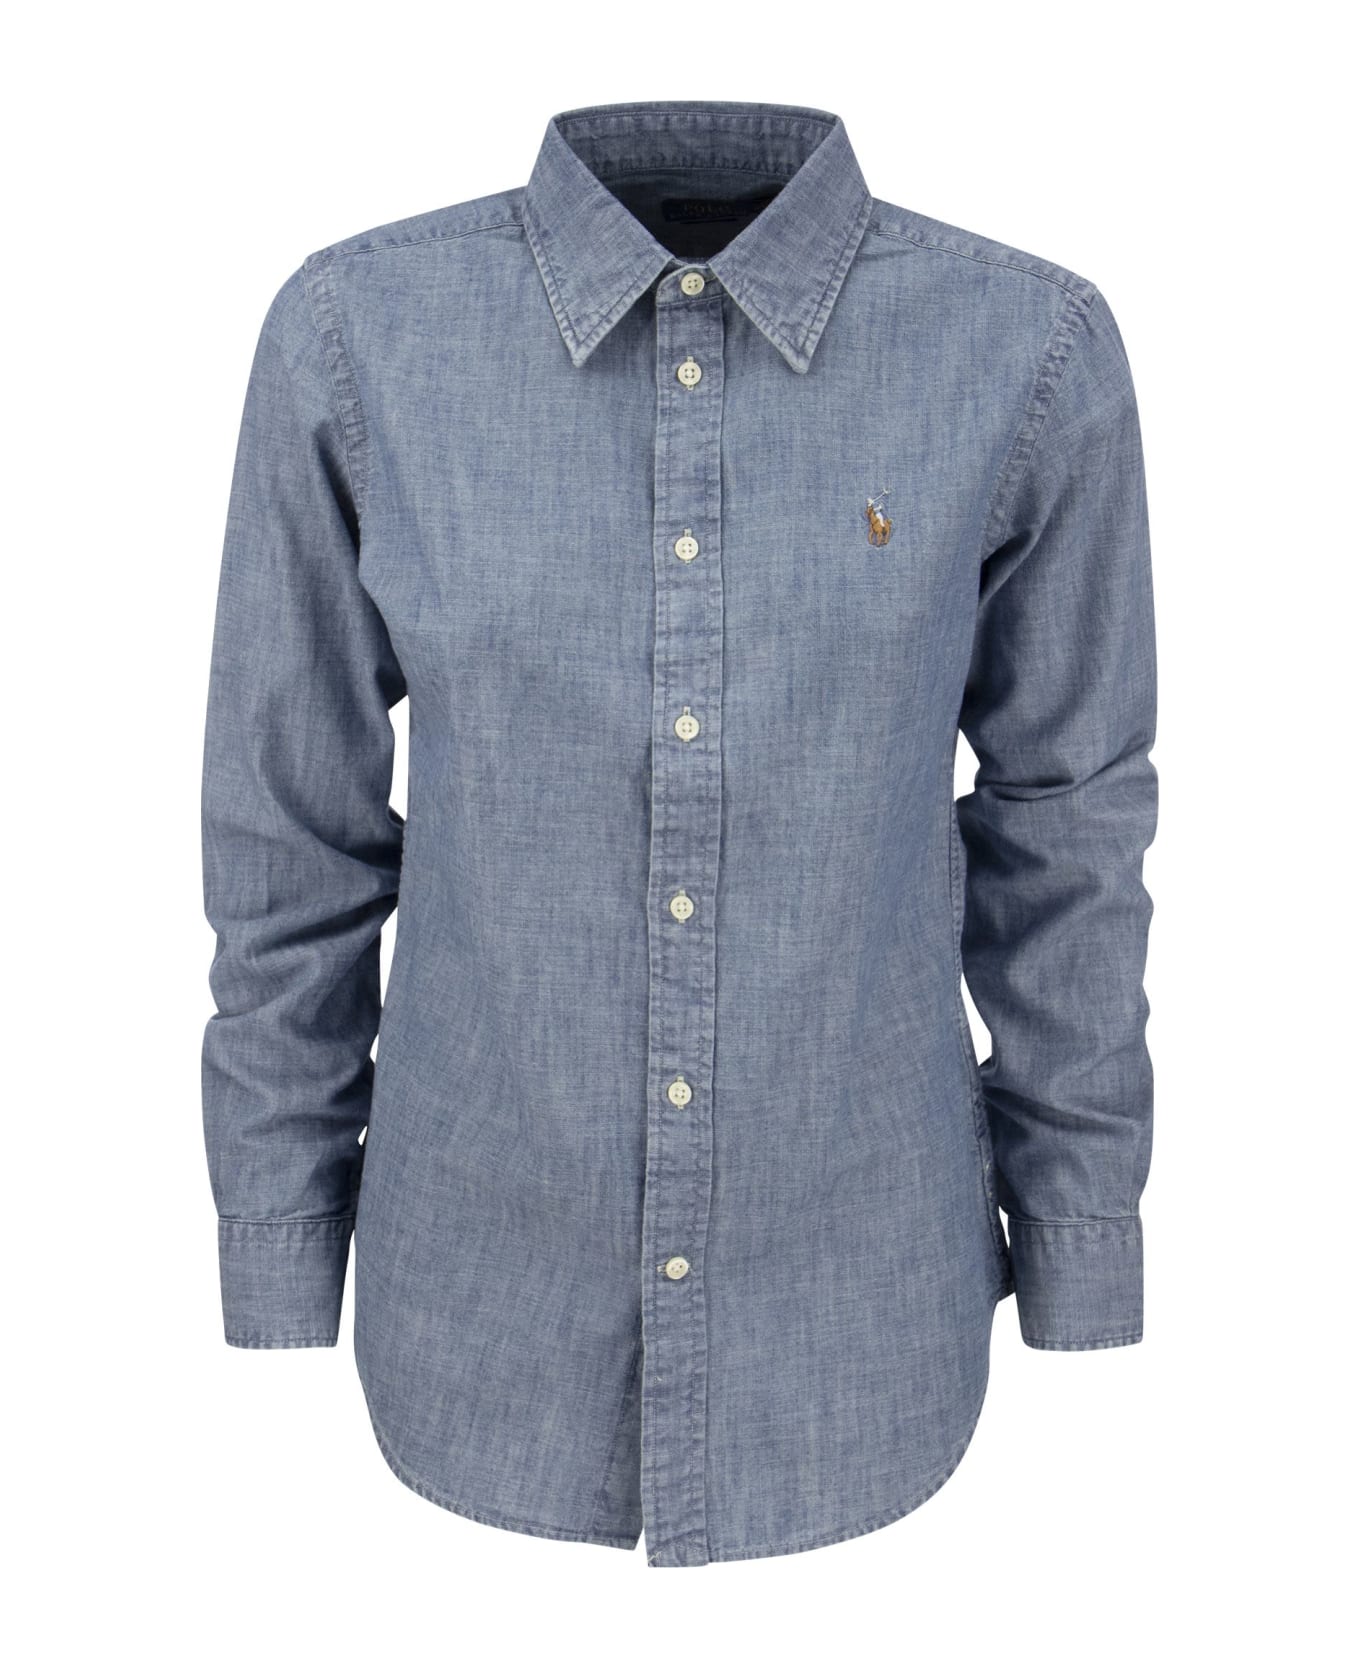 Ralph Lauren Cotton Chambray Shirt - Light Blue シャツ